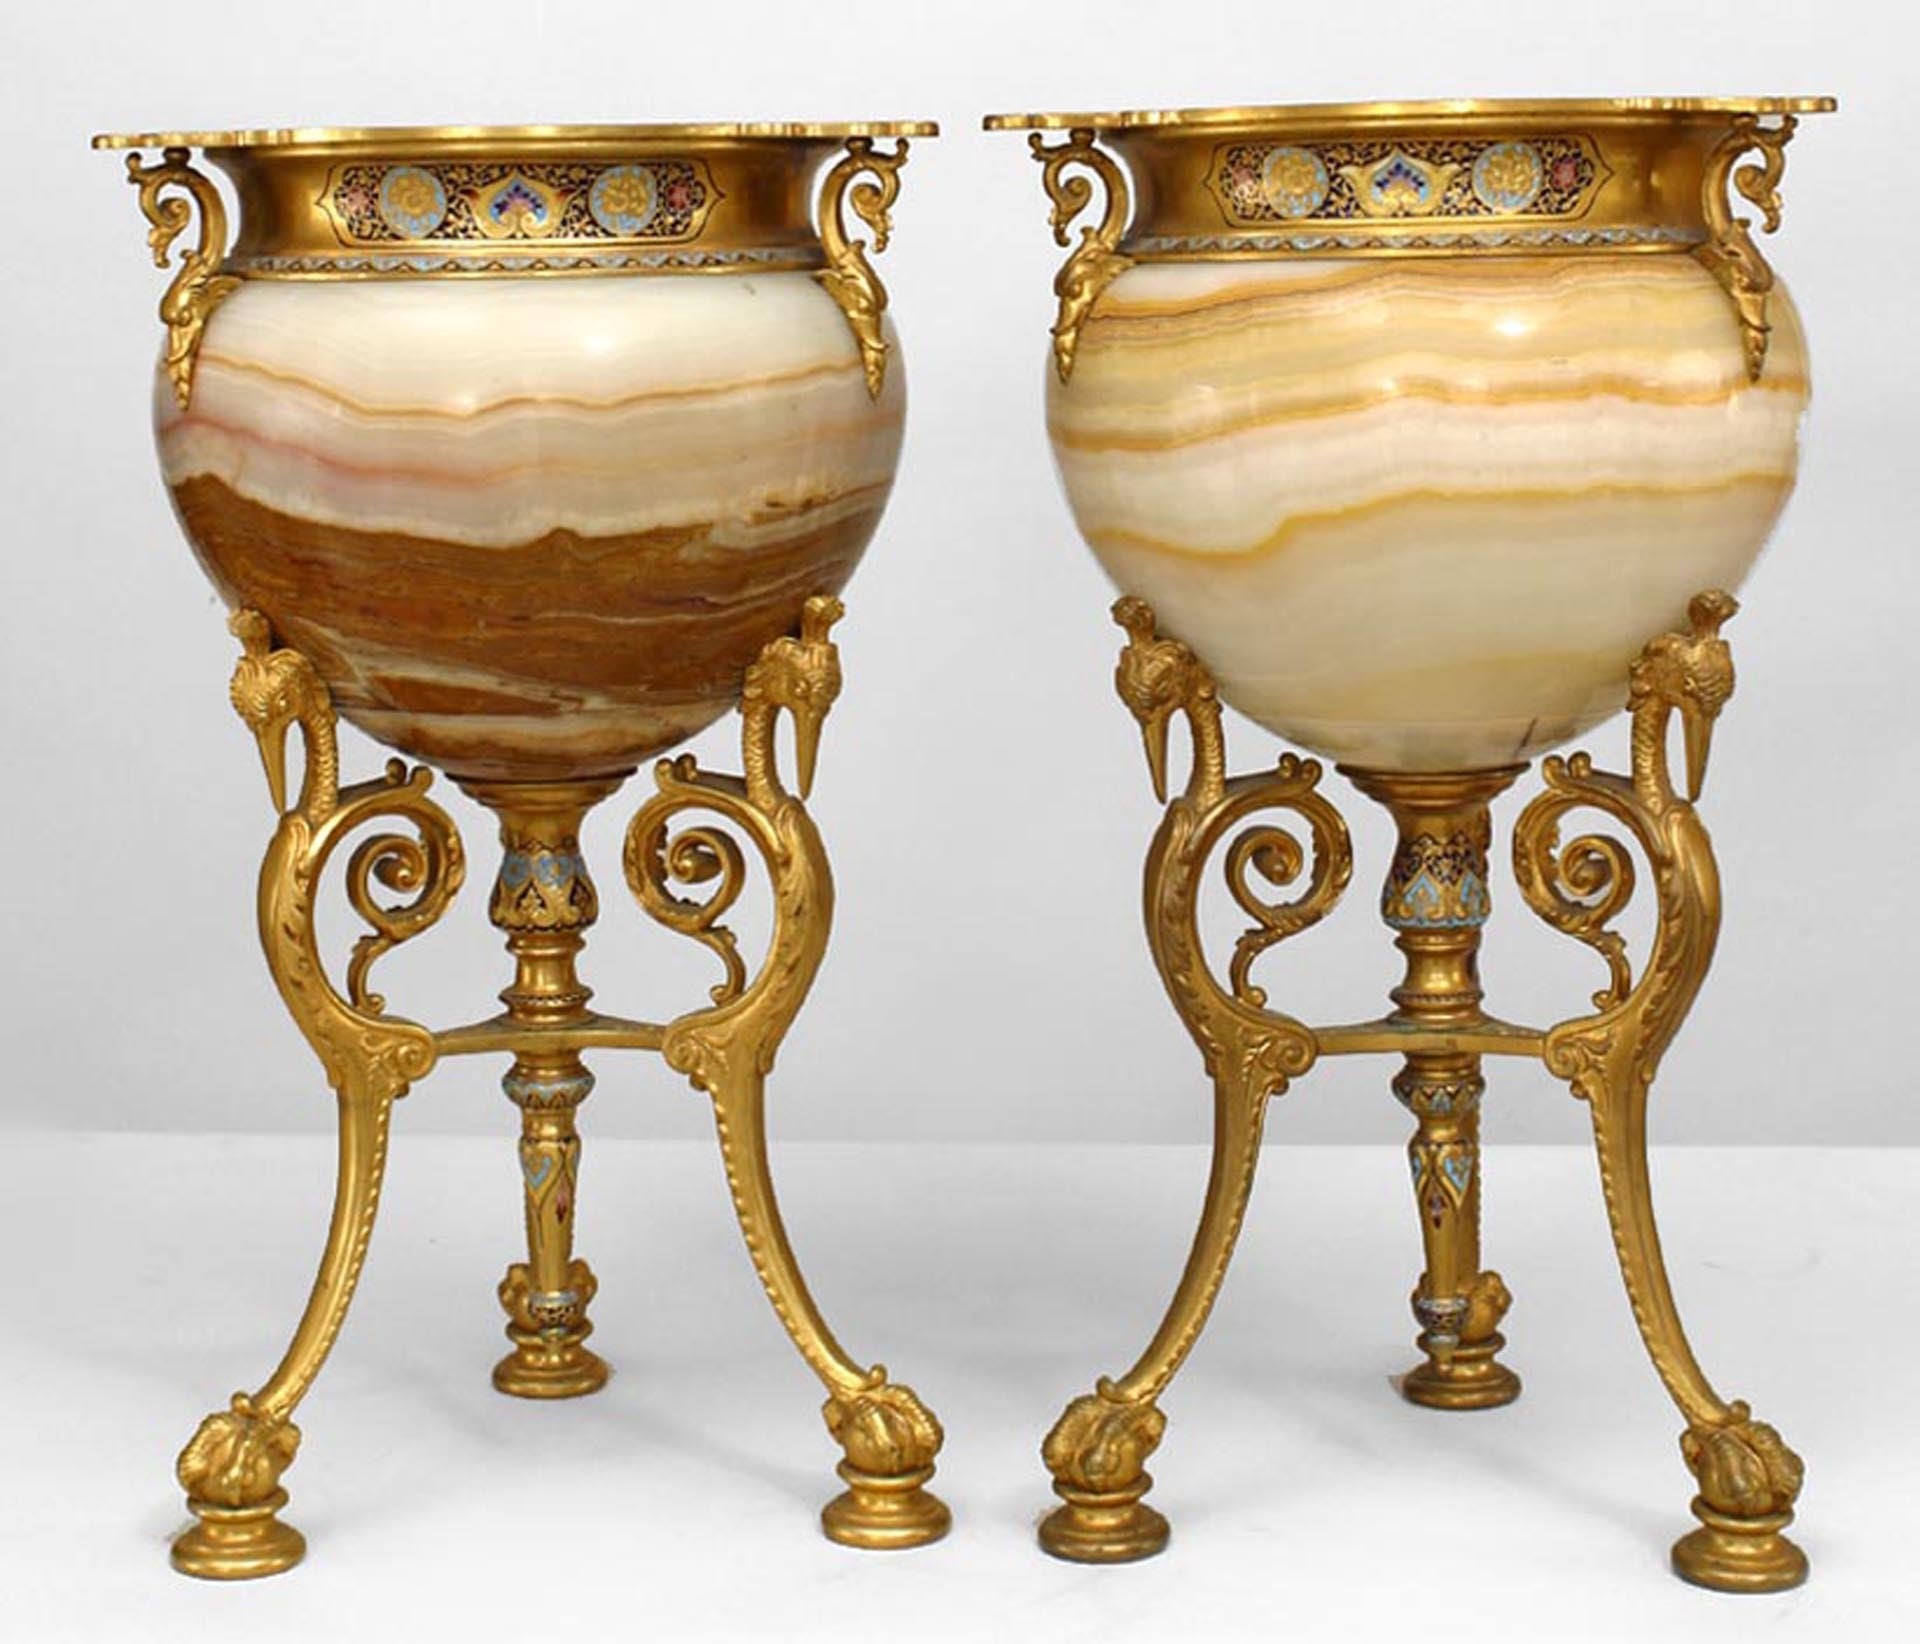 Paire d'urnes françaises du 19ème siècle montées sur onyx et bronze doré